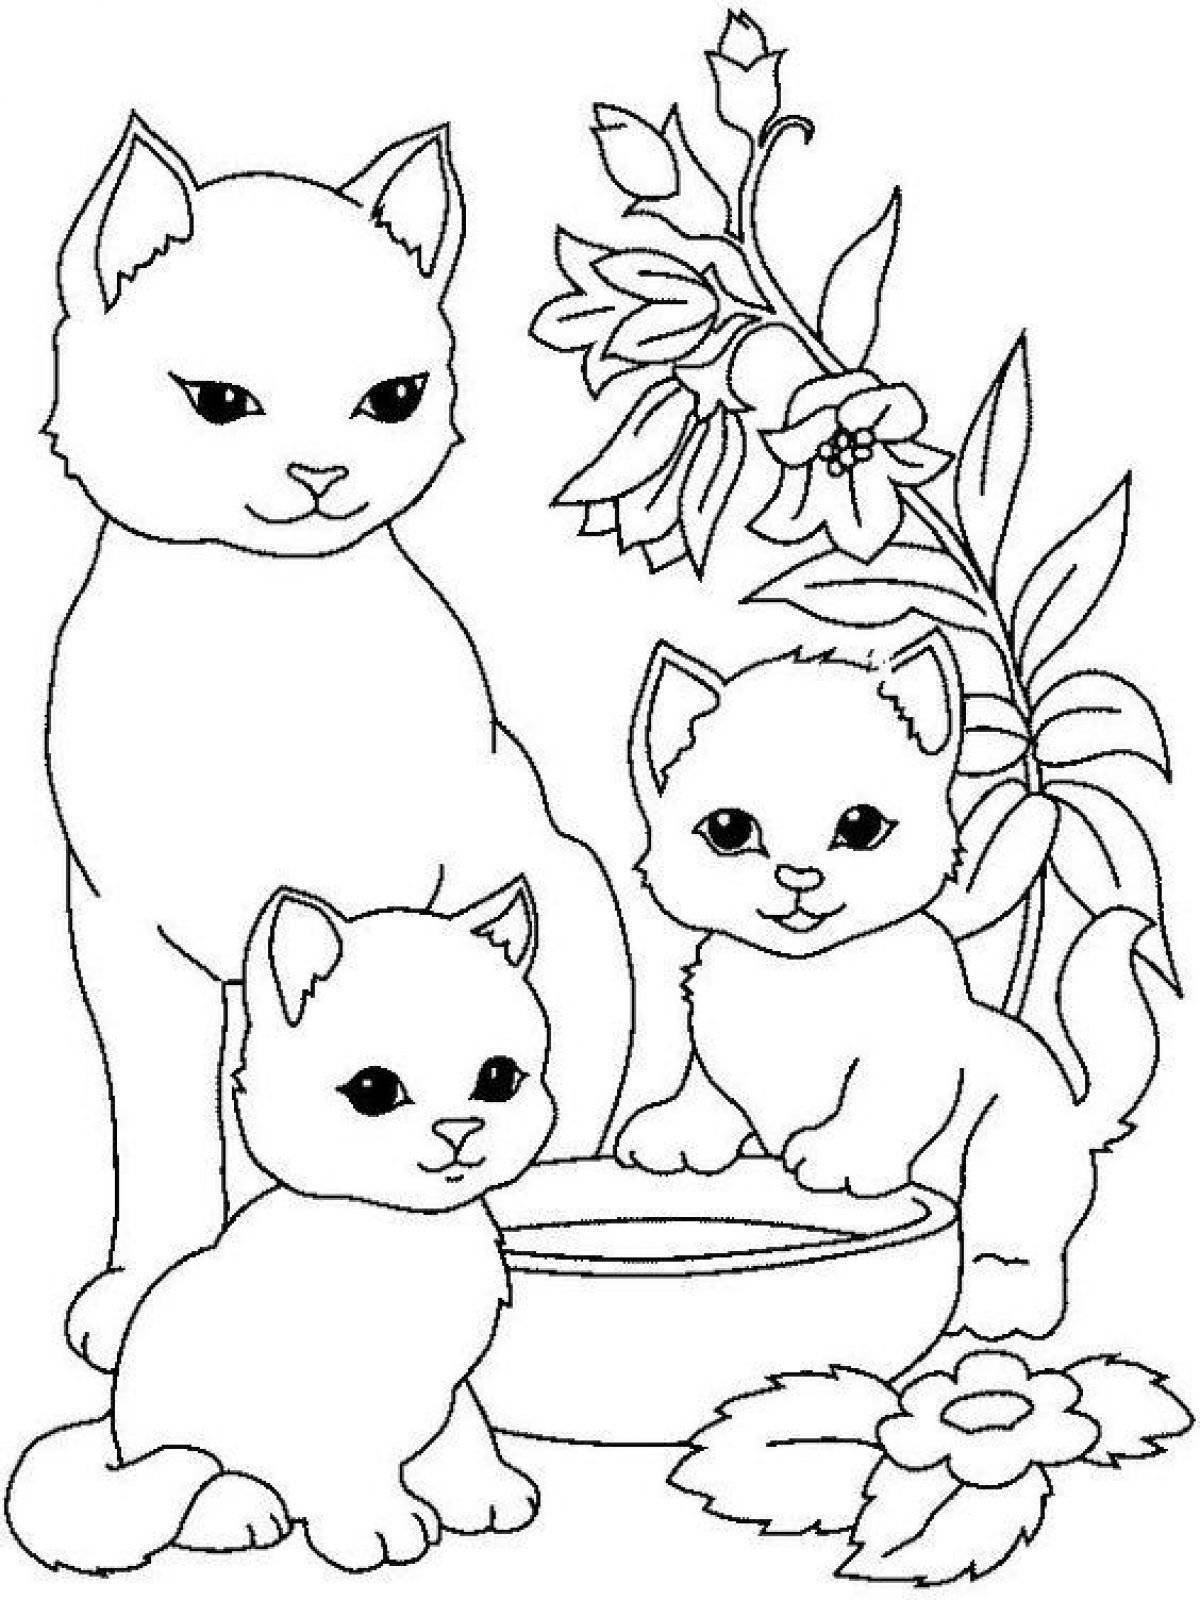 Уютная раскраска кошка для детей 2-3 лет